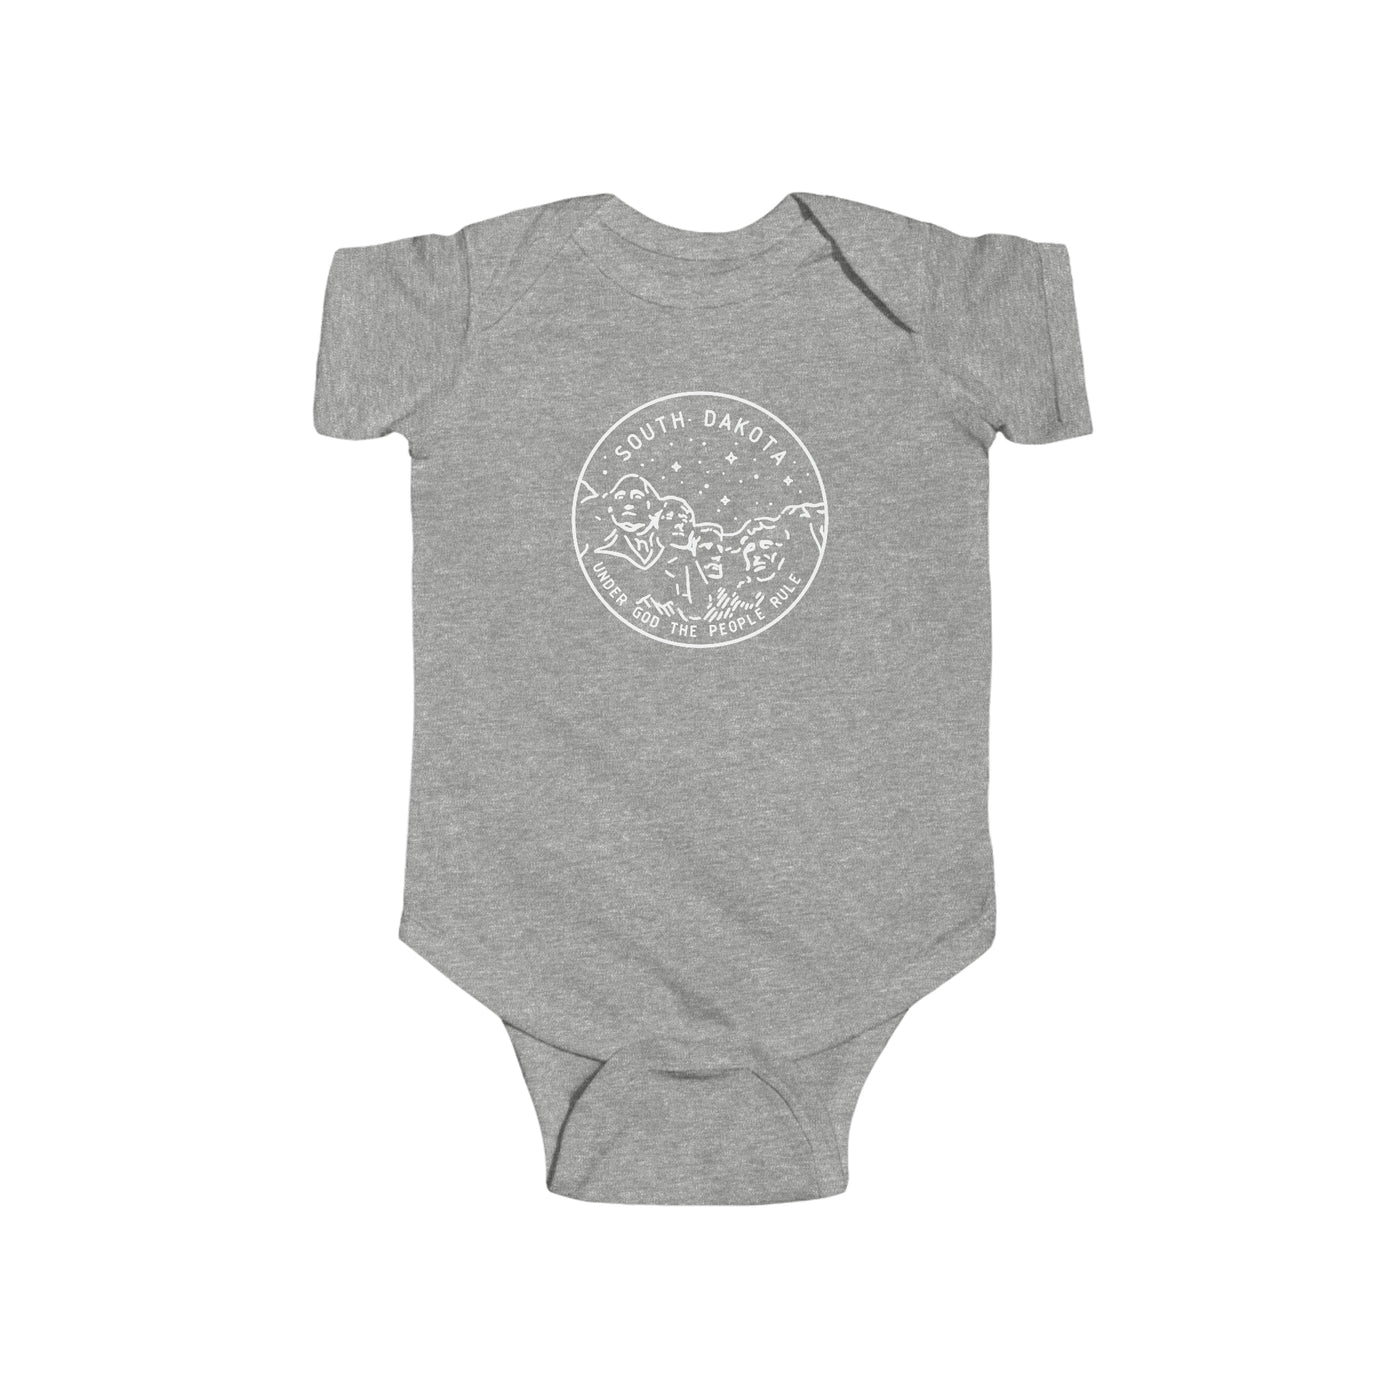 South Dakota State Motto Baby Bodysuit